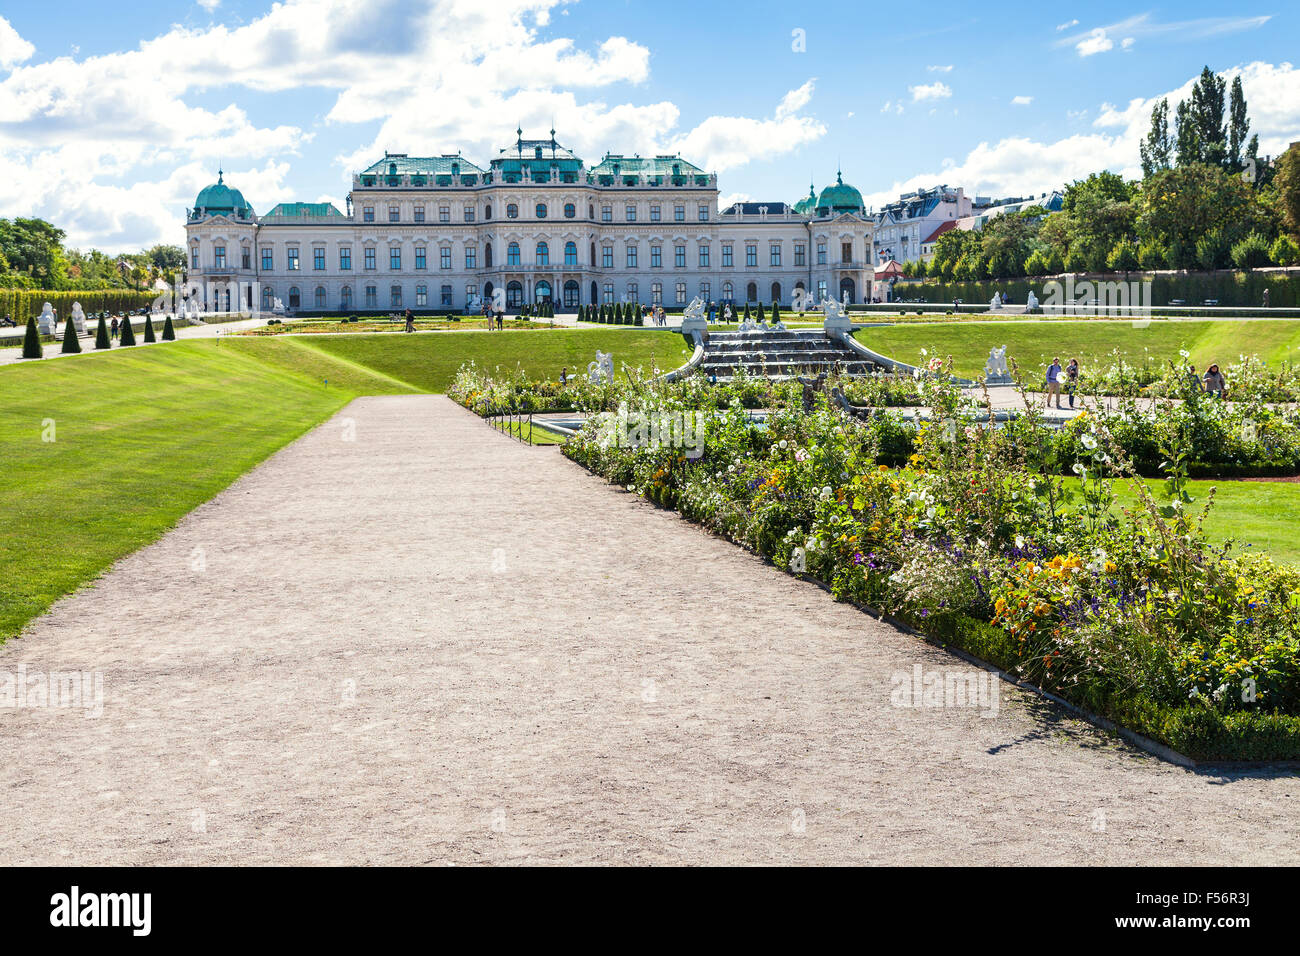 Reisen Sie nach Wien - Pfade zum oberen Schloss Belvedere Garten, Wien, Österreich Stockfoto